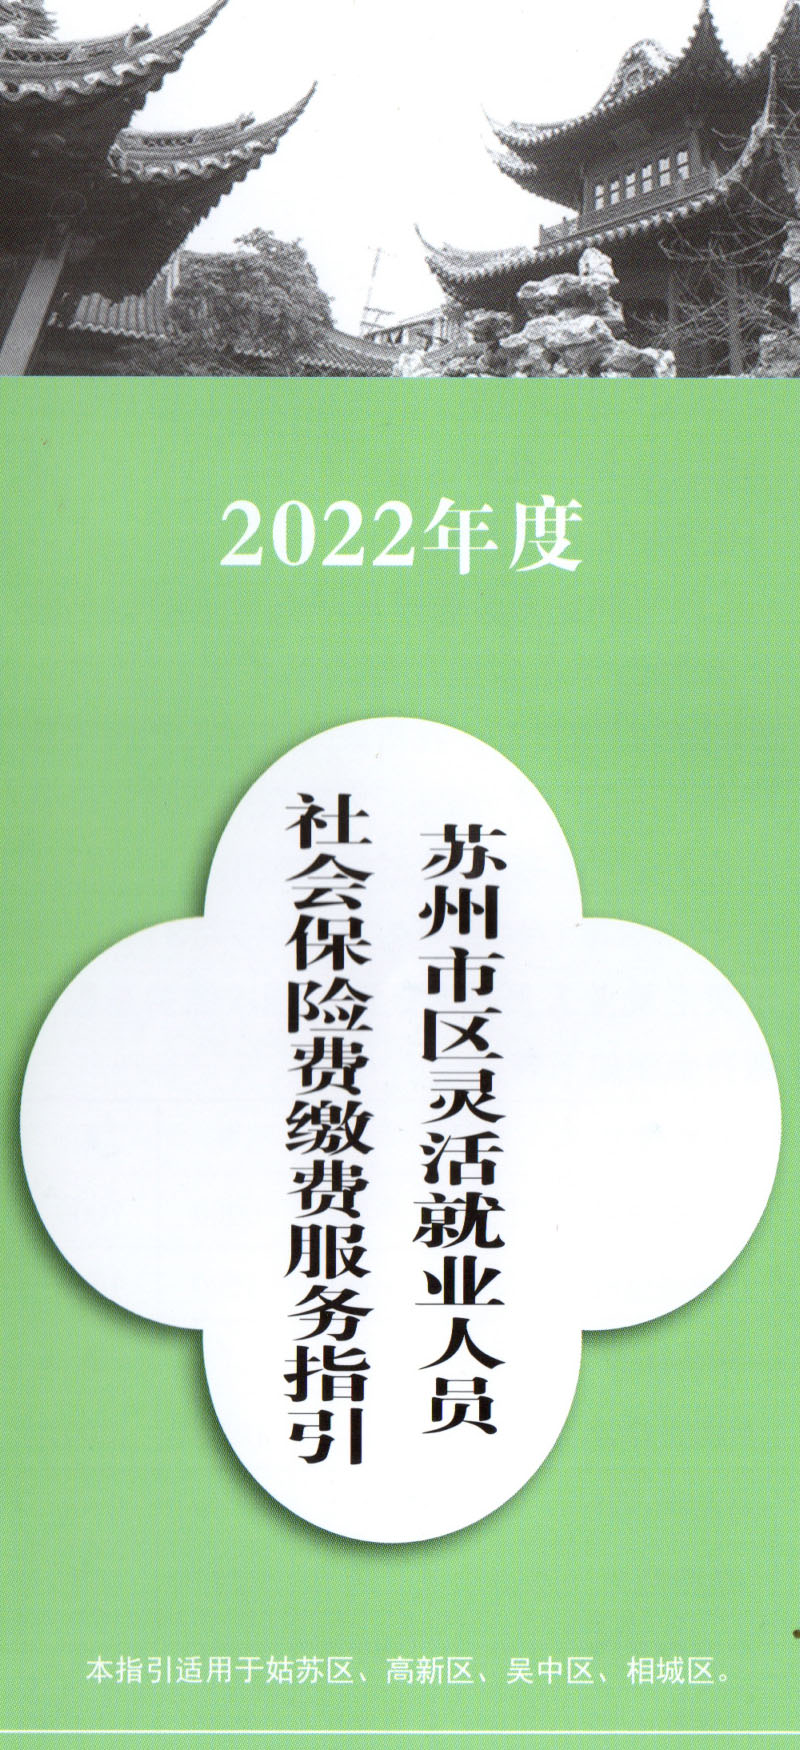 2022蘇州靈活就業1.jpg